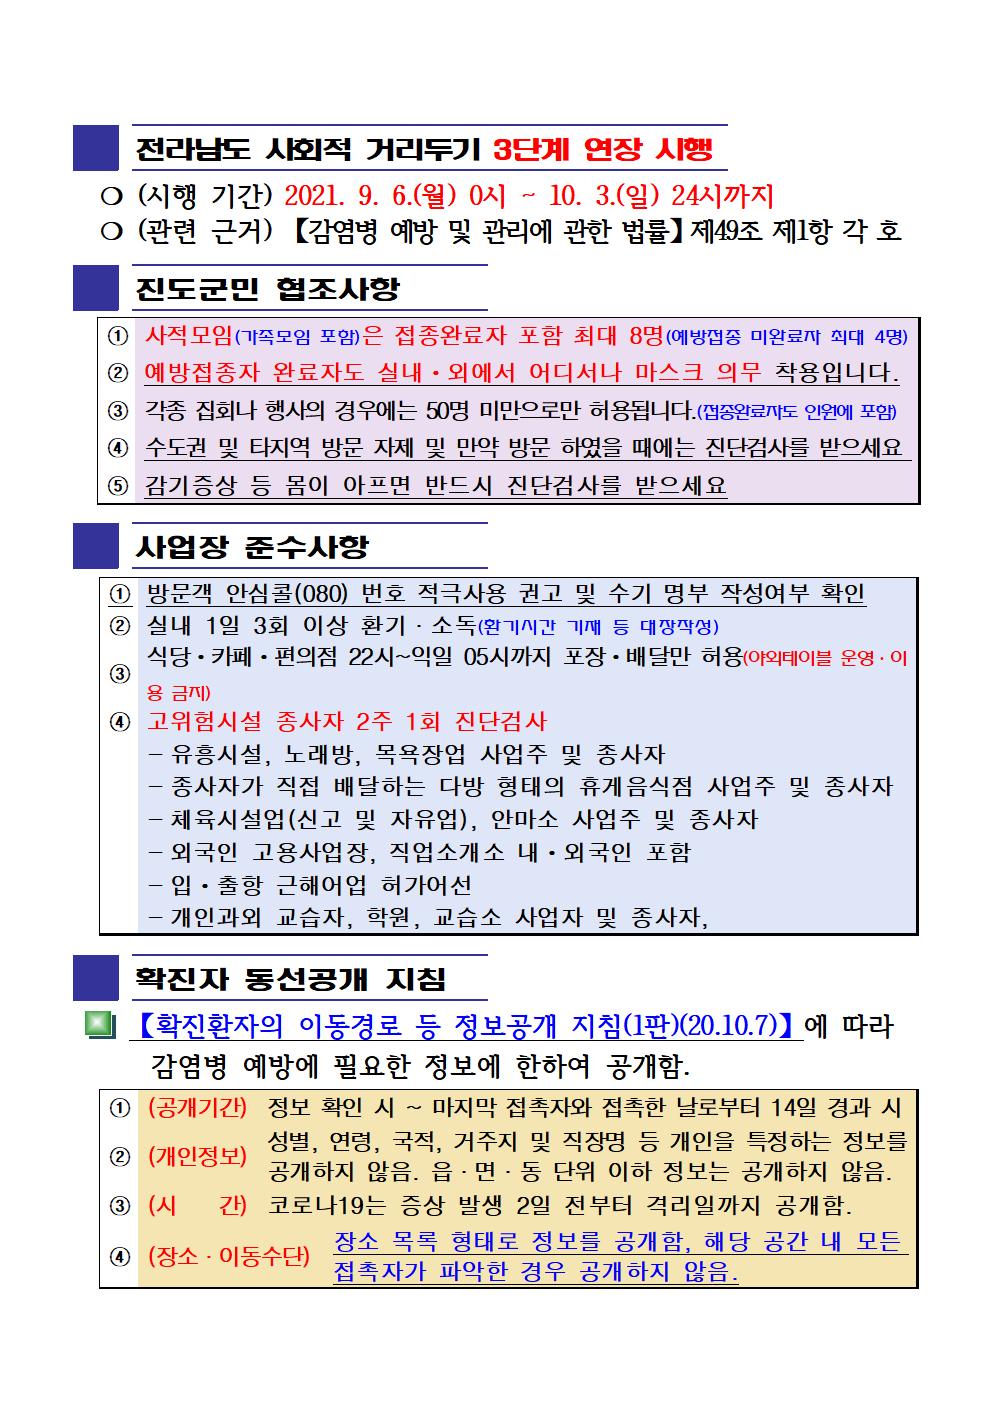 2021년 코로나 19 대응 일일상황보고(9월 27일 24시 기준) 첨부#2